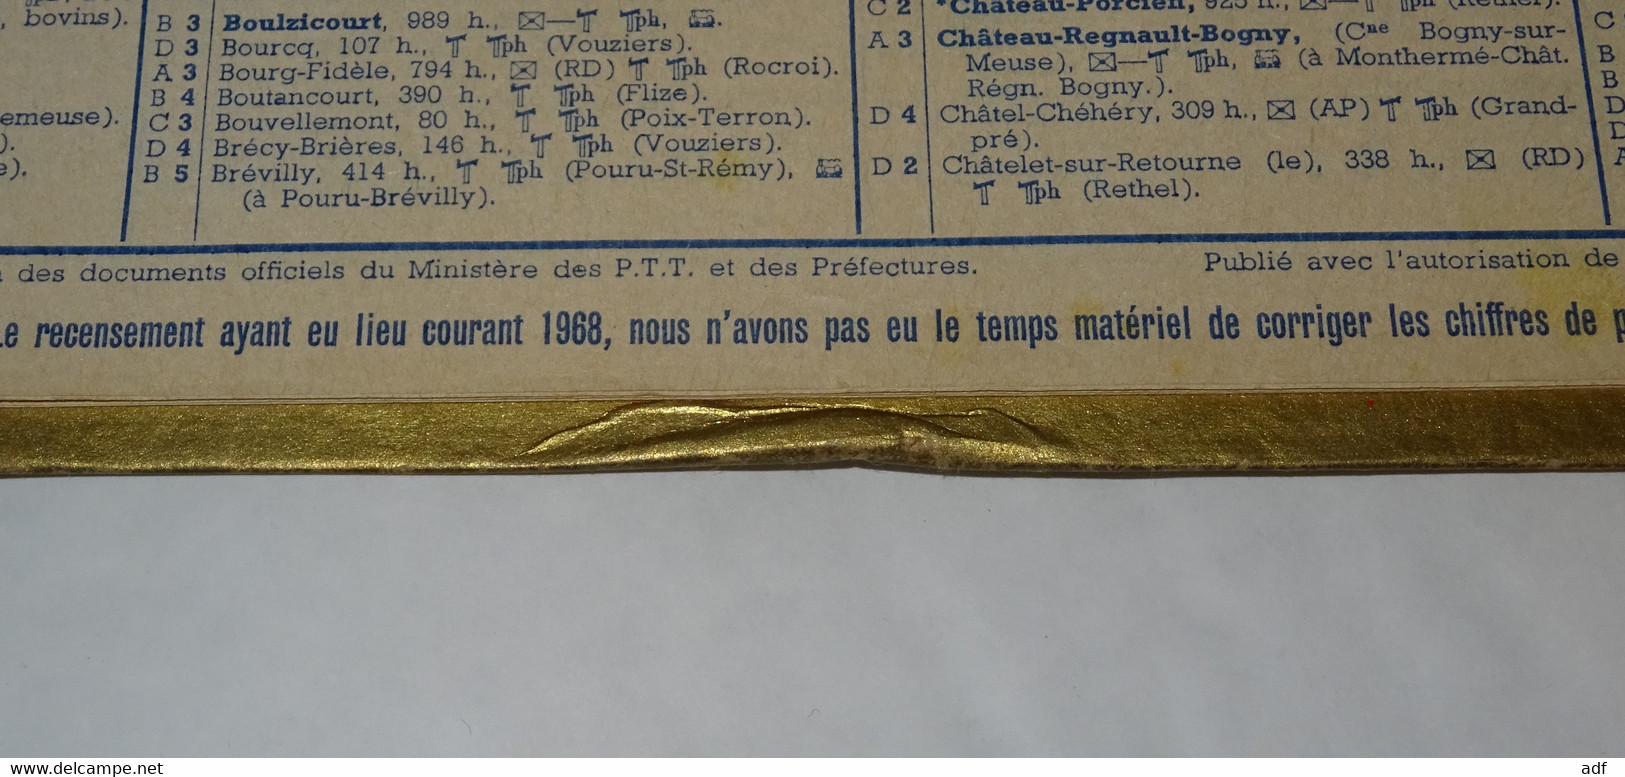 1969 CALENDRIER ALMANACH DES PTT, RENNES, JARDIN DES PLANTES, OBERTHUR, ARDENNES 08